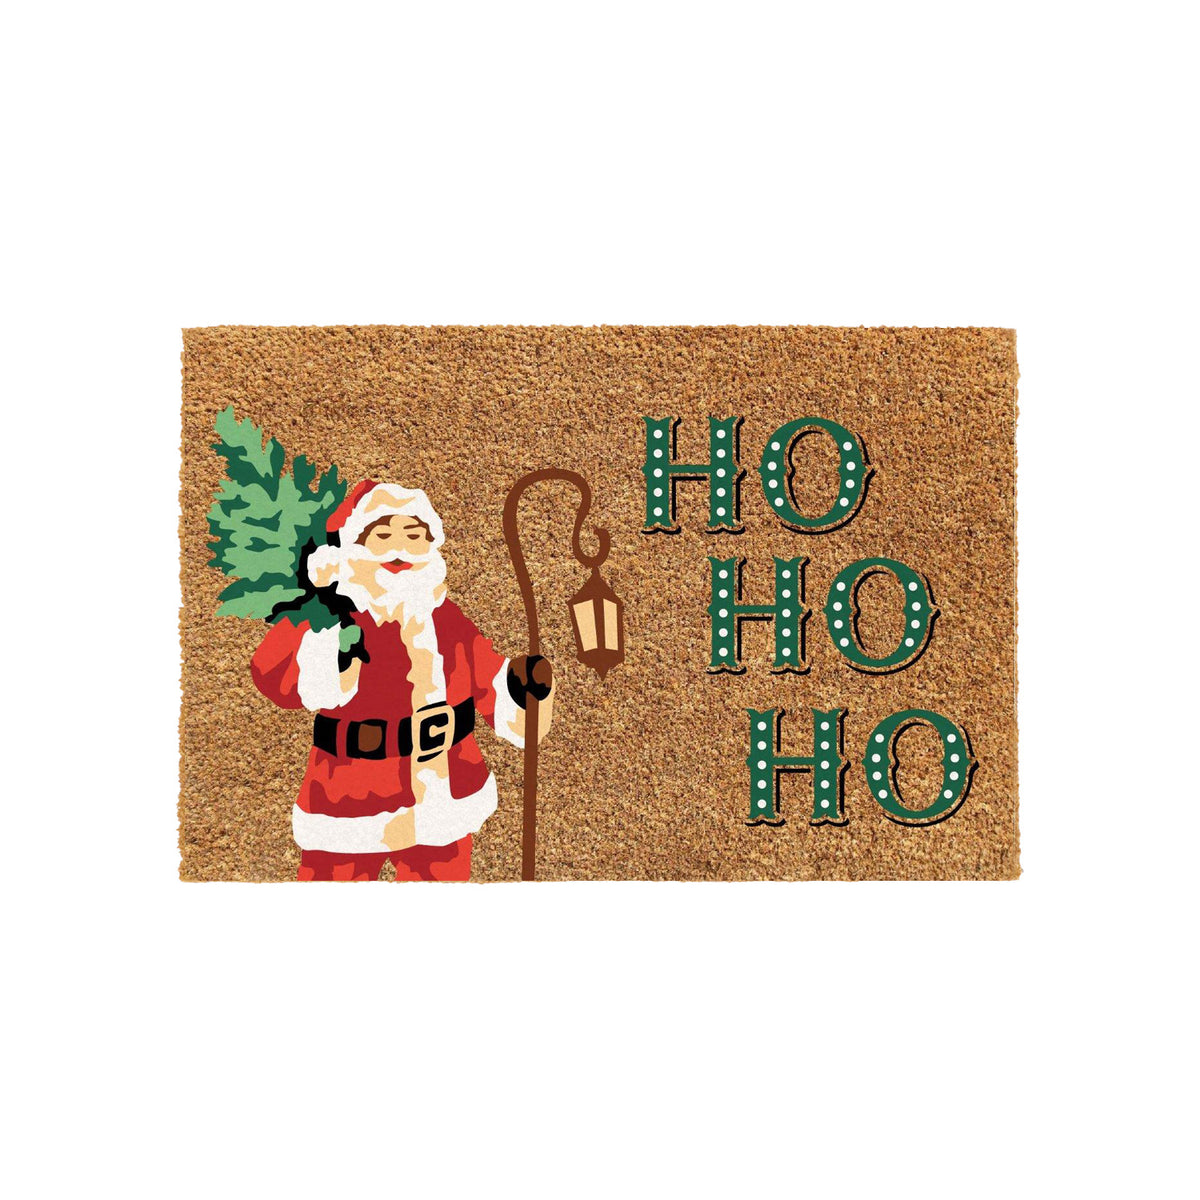 HO HO HO Christmas Theme Printed Coir Natural Door Mat